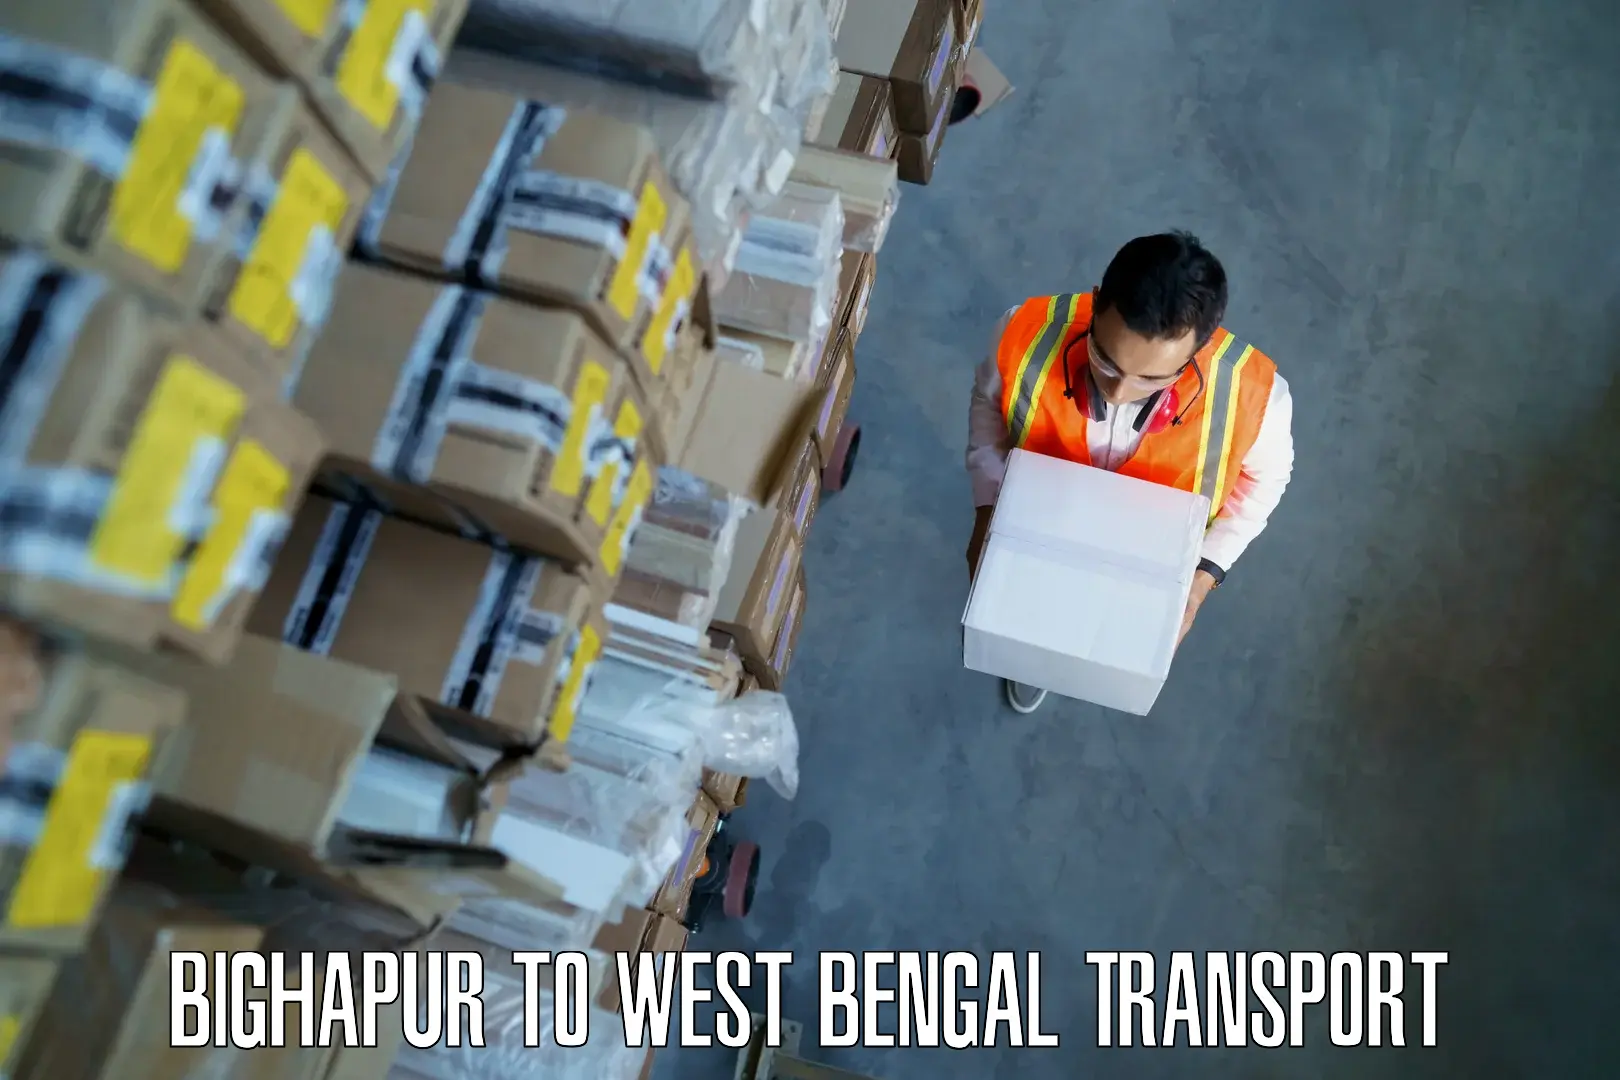 Furniture transport service Bighapur to Kalimpong